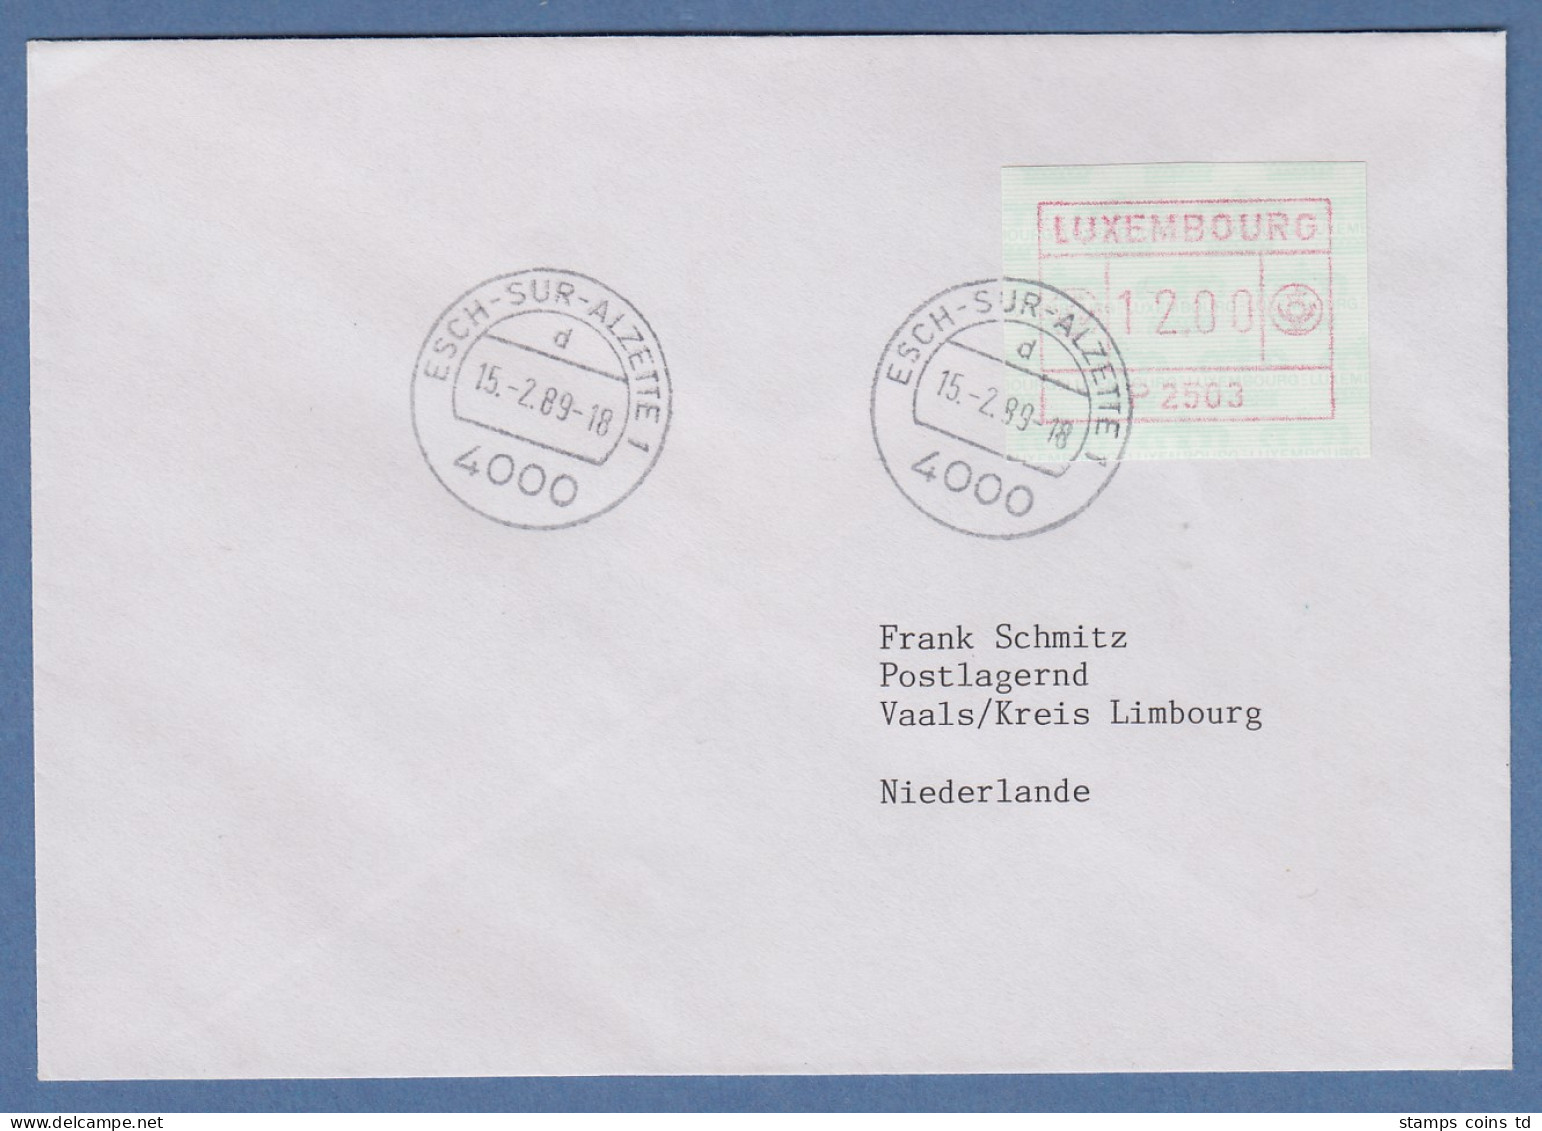 Luxemburg ATM P2503 Wert 12,00 Auf Brief In Die Niederlande, 15.2.89 - Vignettes D'affranchissement